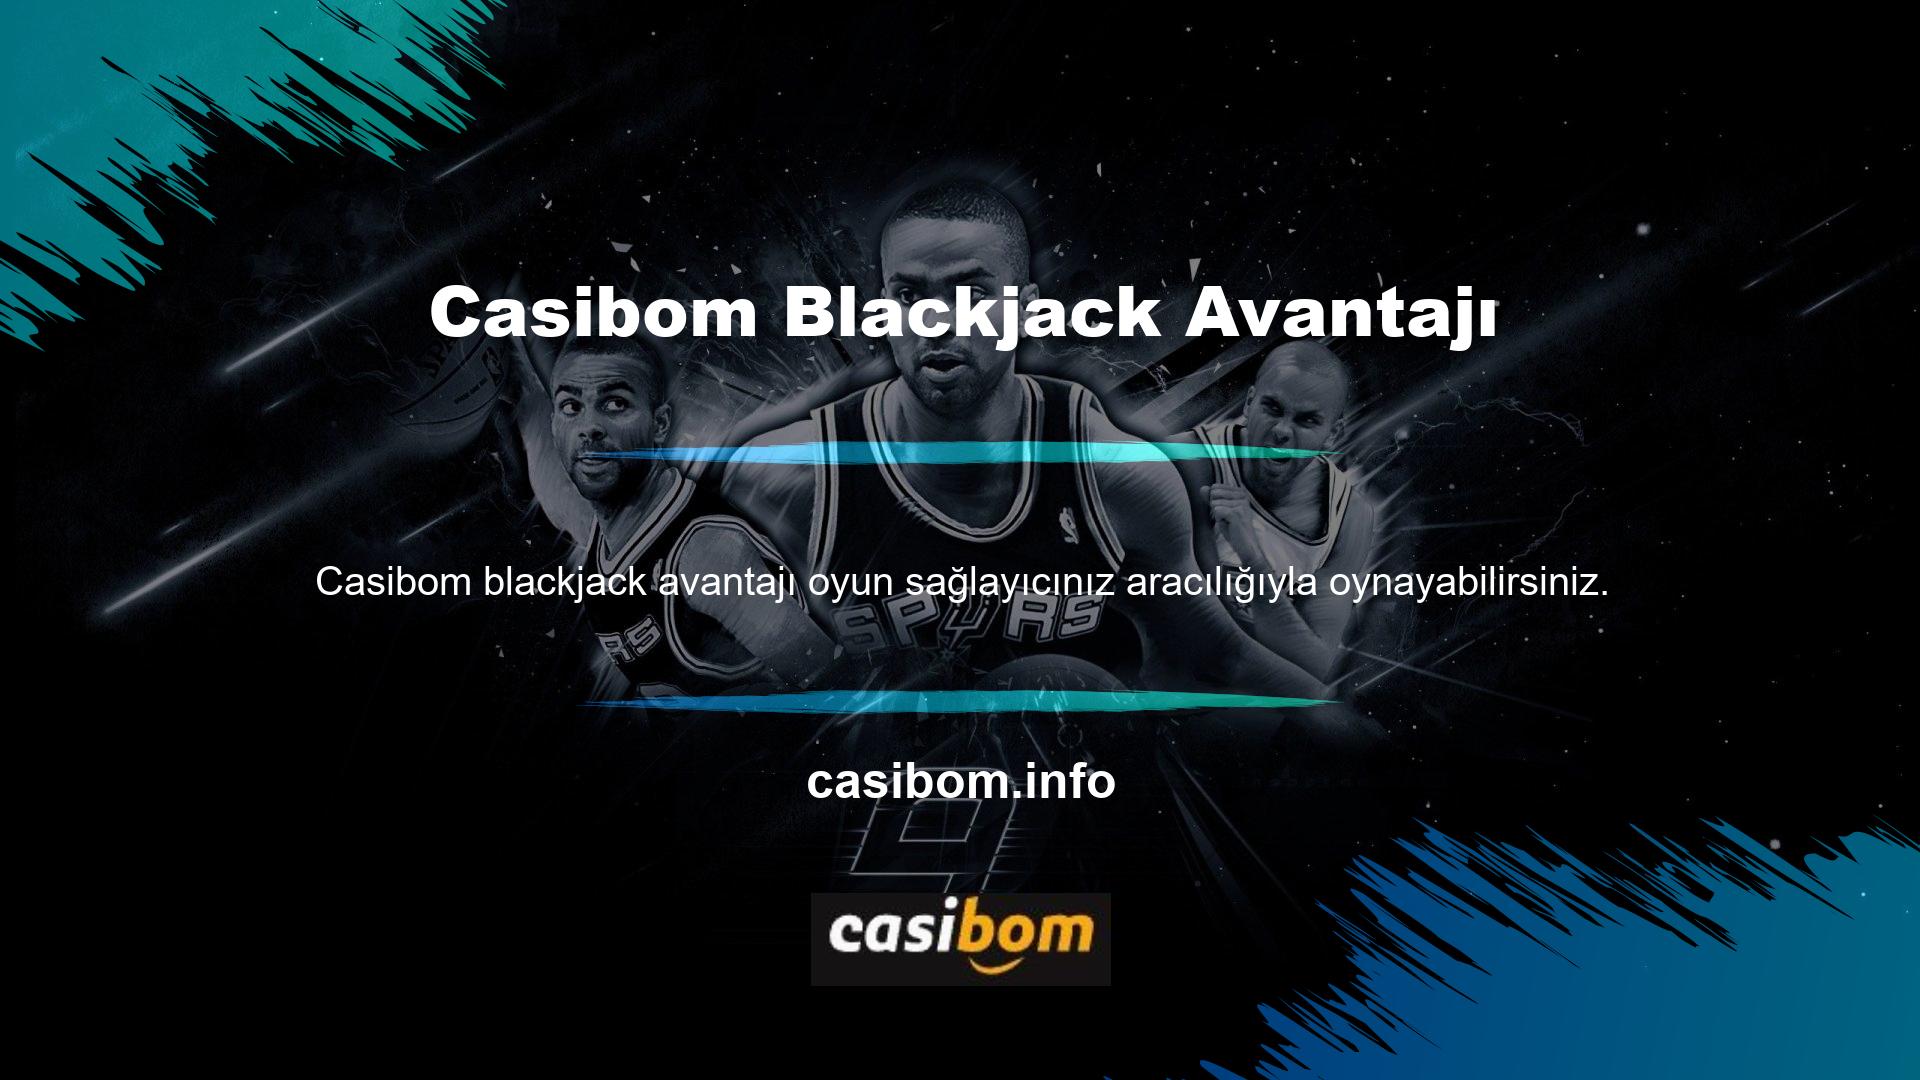 Casibom Blackjack'in avantajları arasında canlı bir krupiyeyle oynama ve krupiyeyi tercihinize göre seçebilme yer alıyor